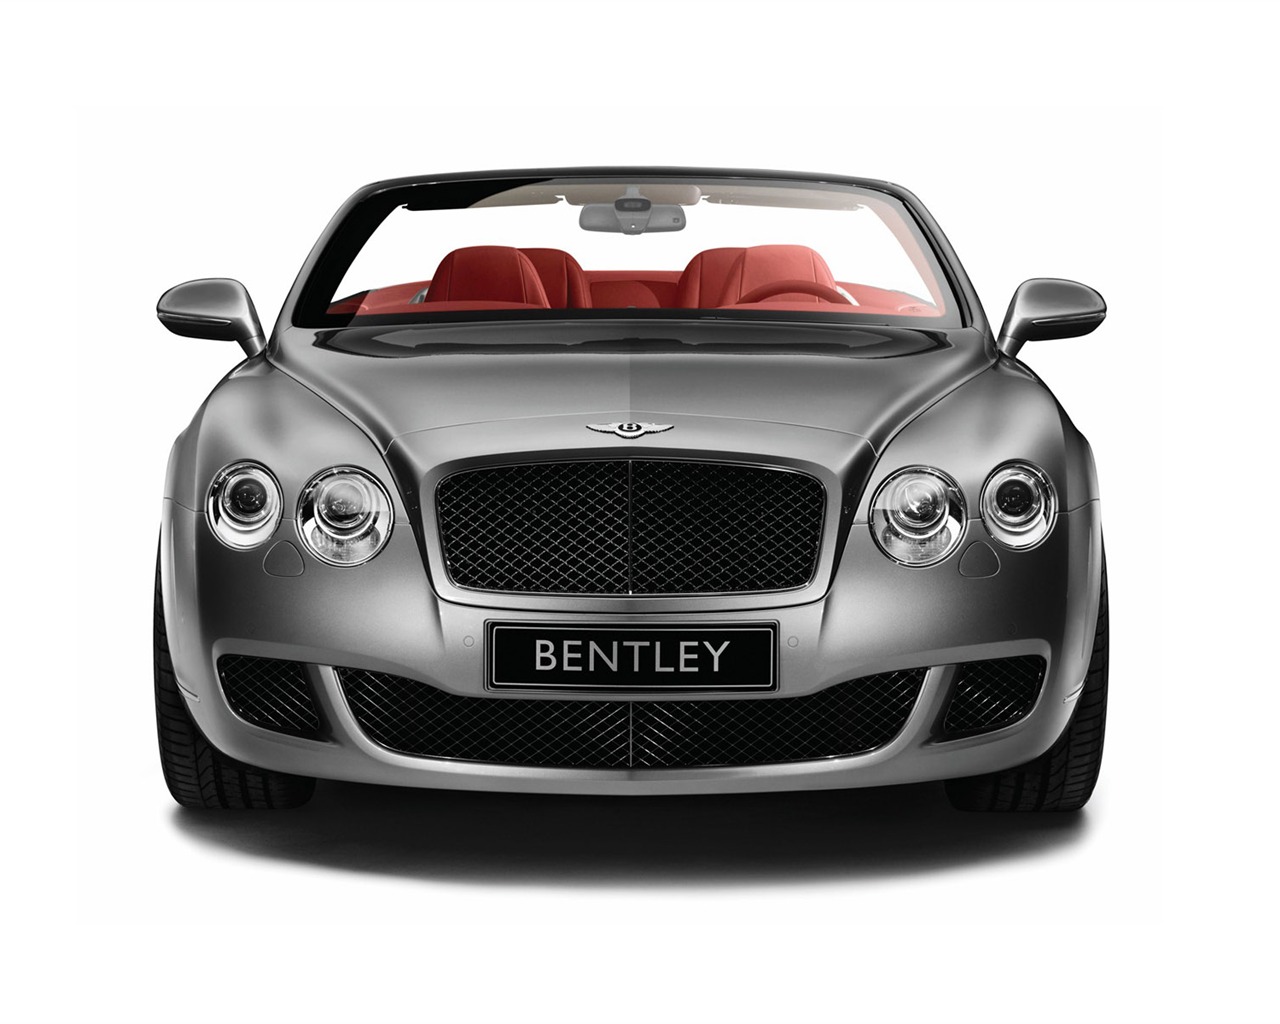 Bentley 宾利 壁纸专辑(一)20 - 1280x1024